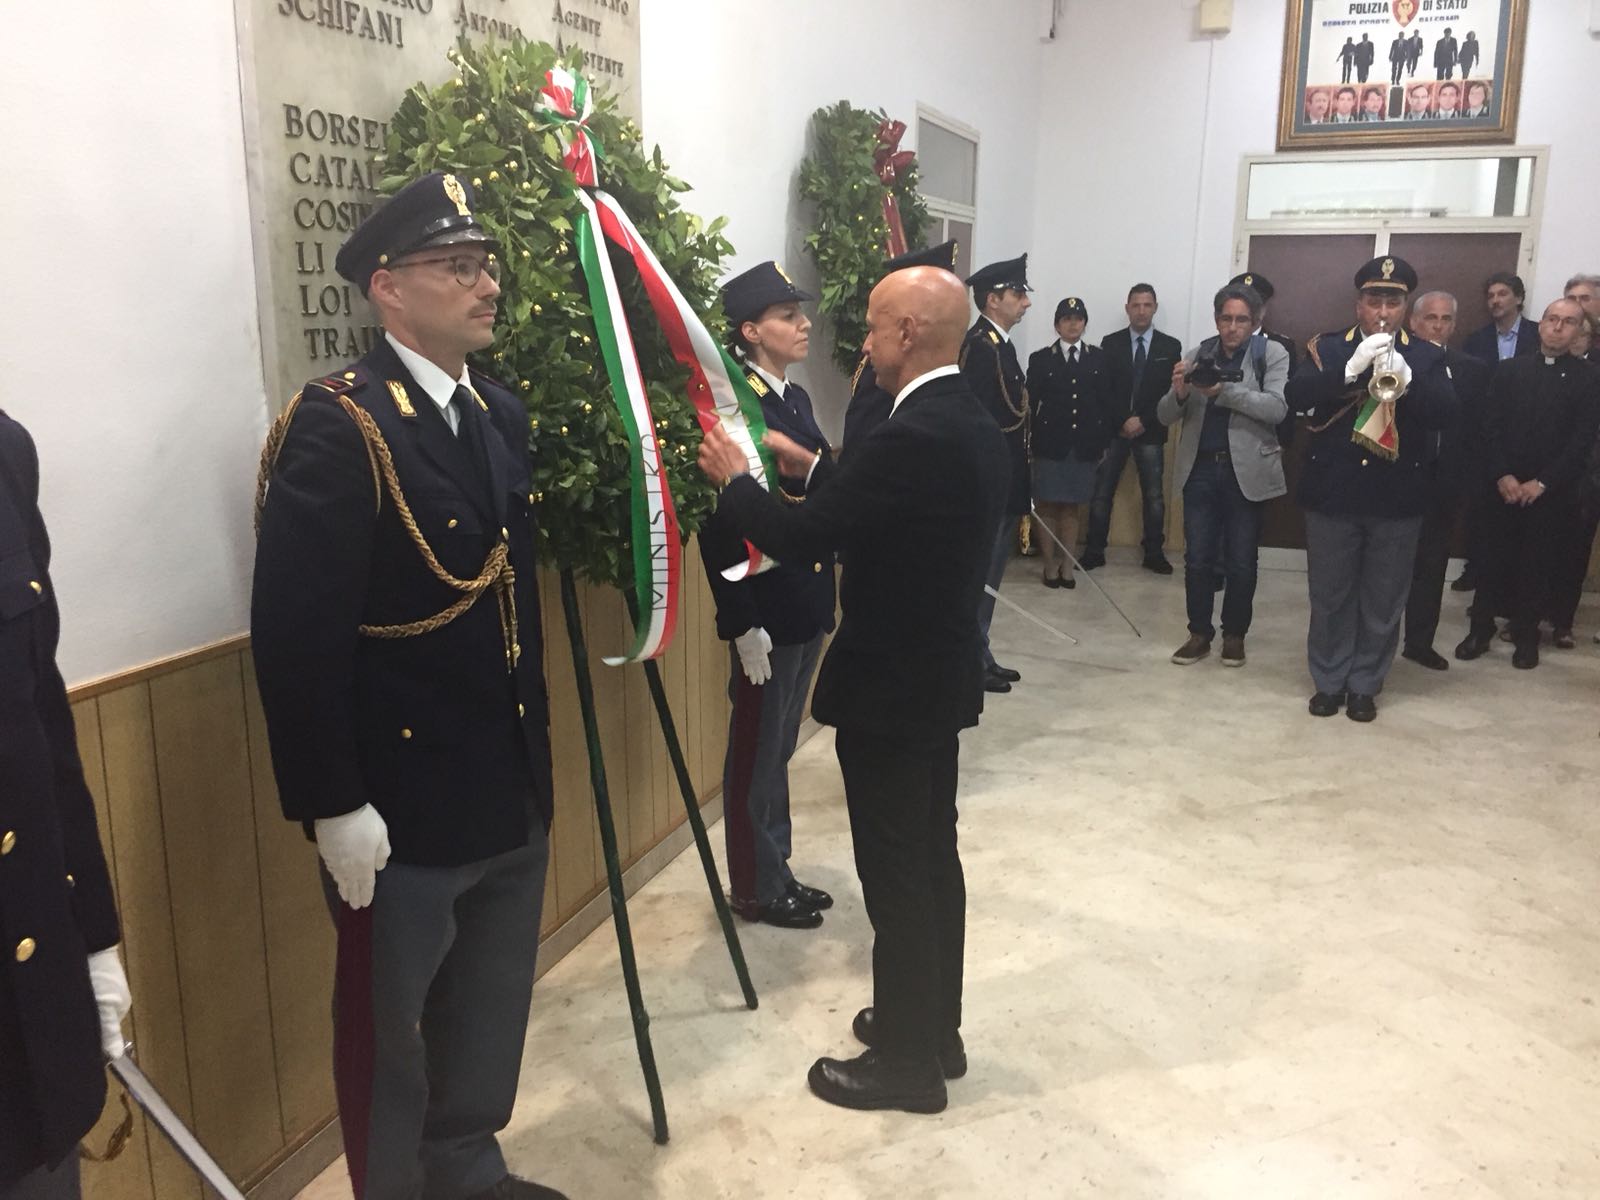 Il presidente della Camera dei Deputati Roberto Fico, il ministro dell’Interno Marco Minniti e il capo della Polizia Franco Gabrielli rendono omaggio ai caduti in servizio del reparto scorte